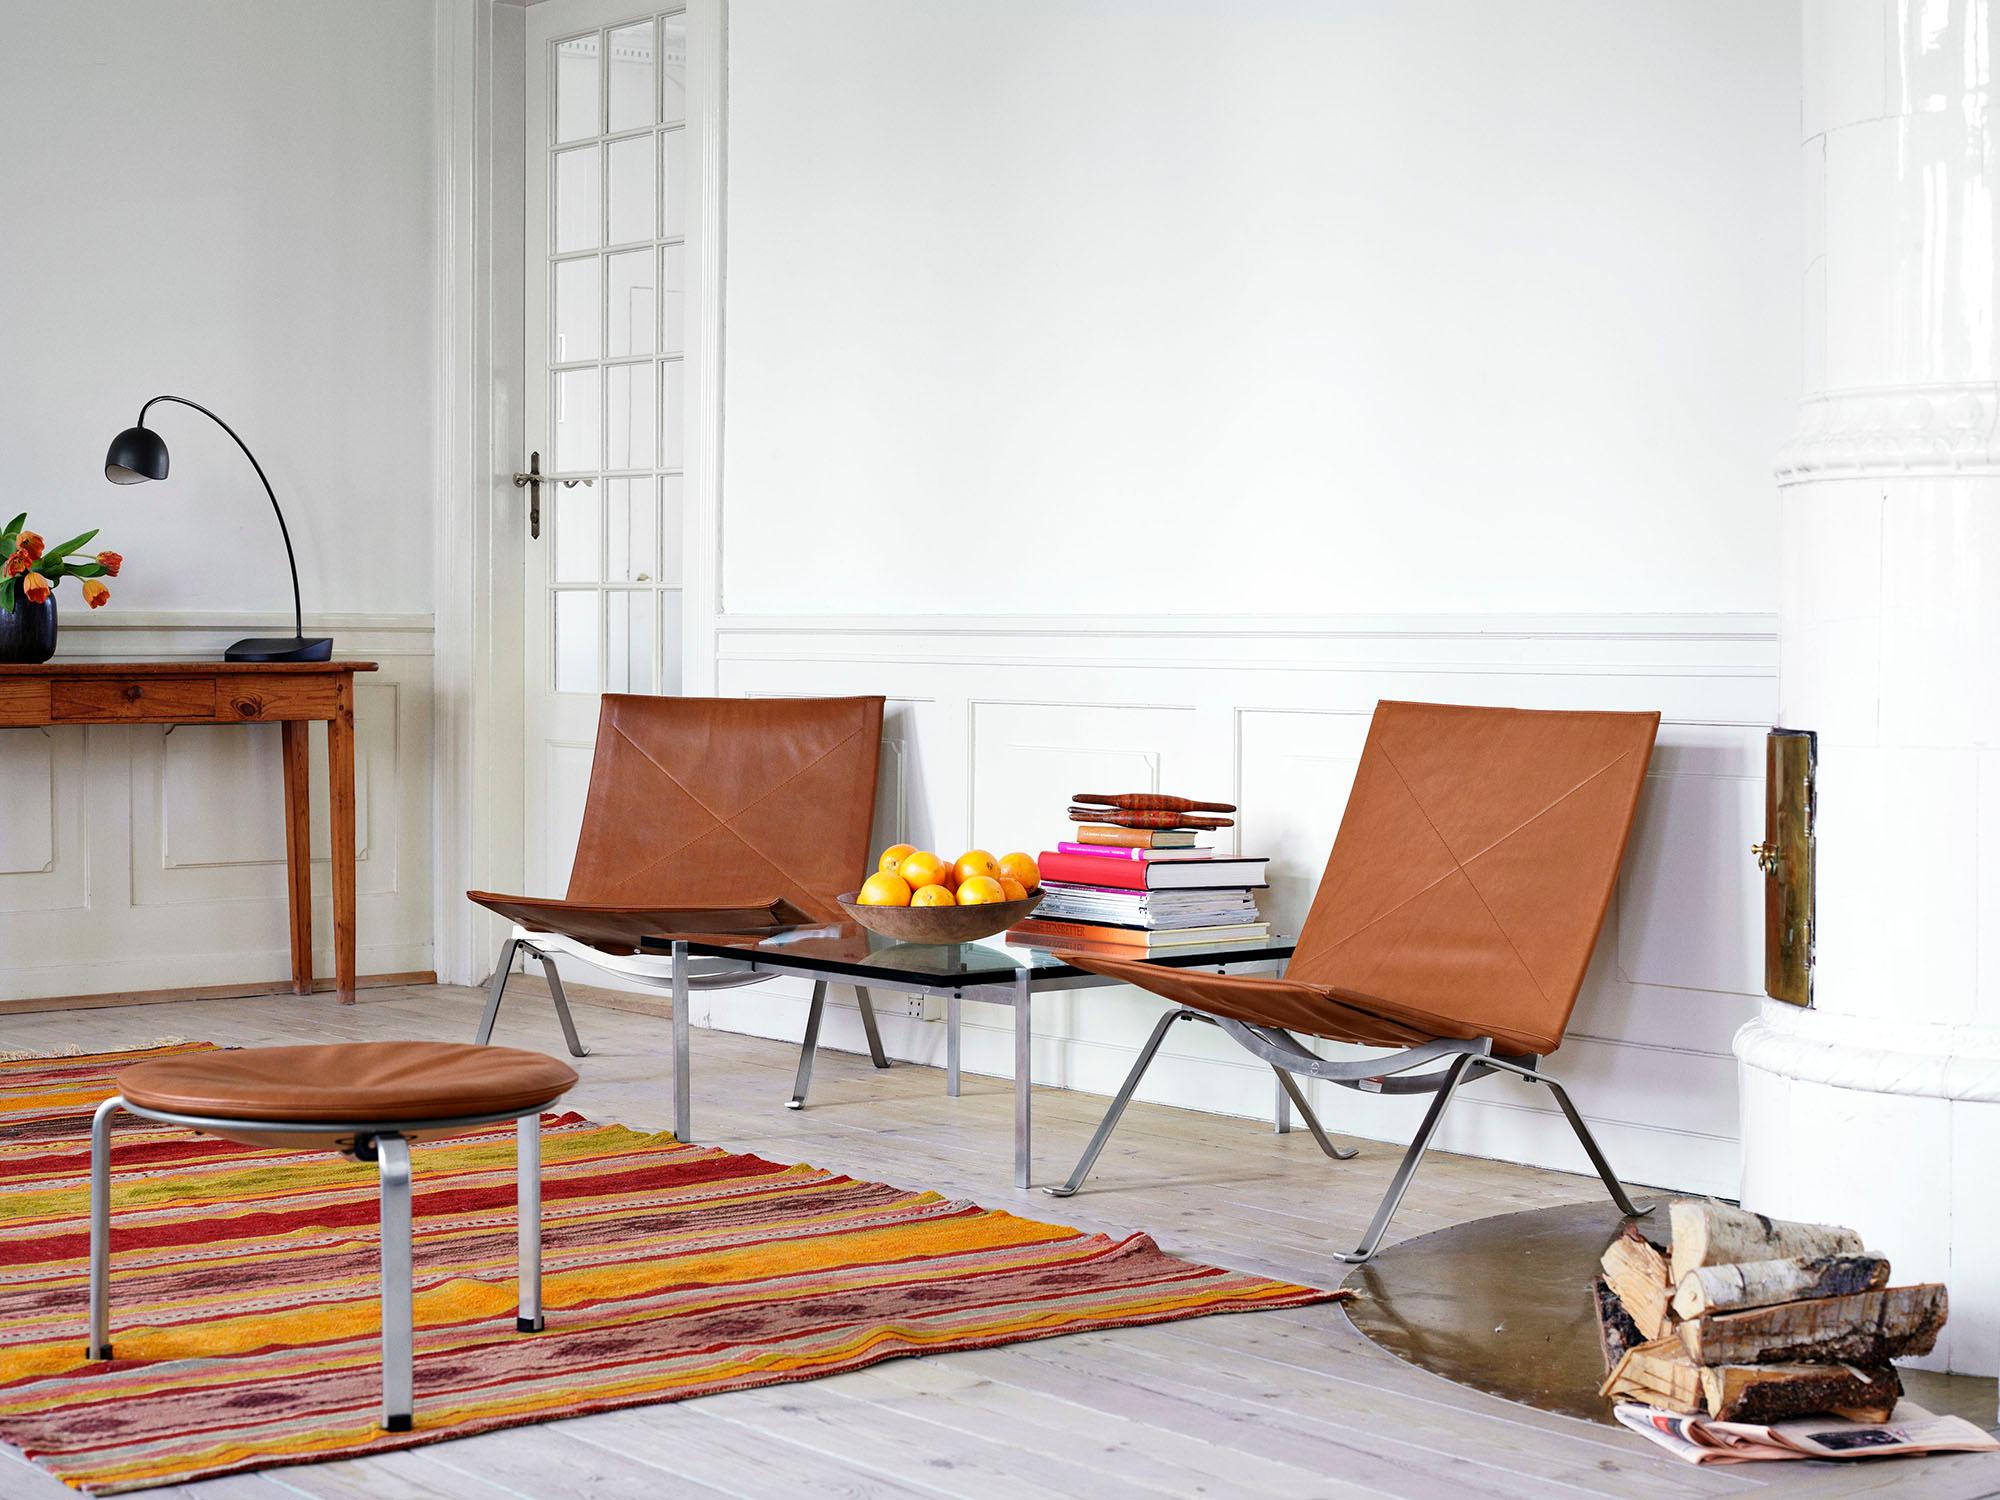 Poul Kjærholm 'PK22' Lounge Chair für Fritz Hansen in Leder (Kat. 5).

Fritz Hansen wurde 1872 gegründet und ist zum Synonym für legendäres dänisches Design geworden. Die Marke kombiniert zeitlose Handwerkskunst mit einem Schwerpunkt auf